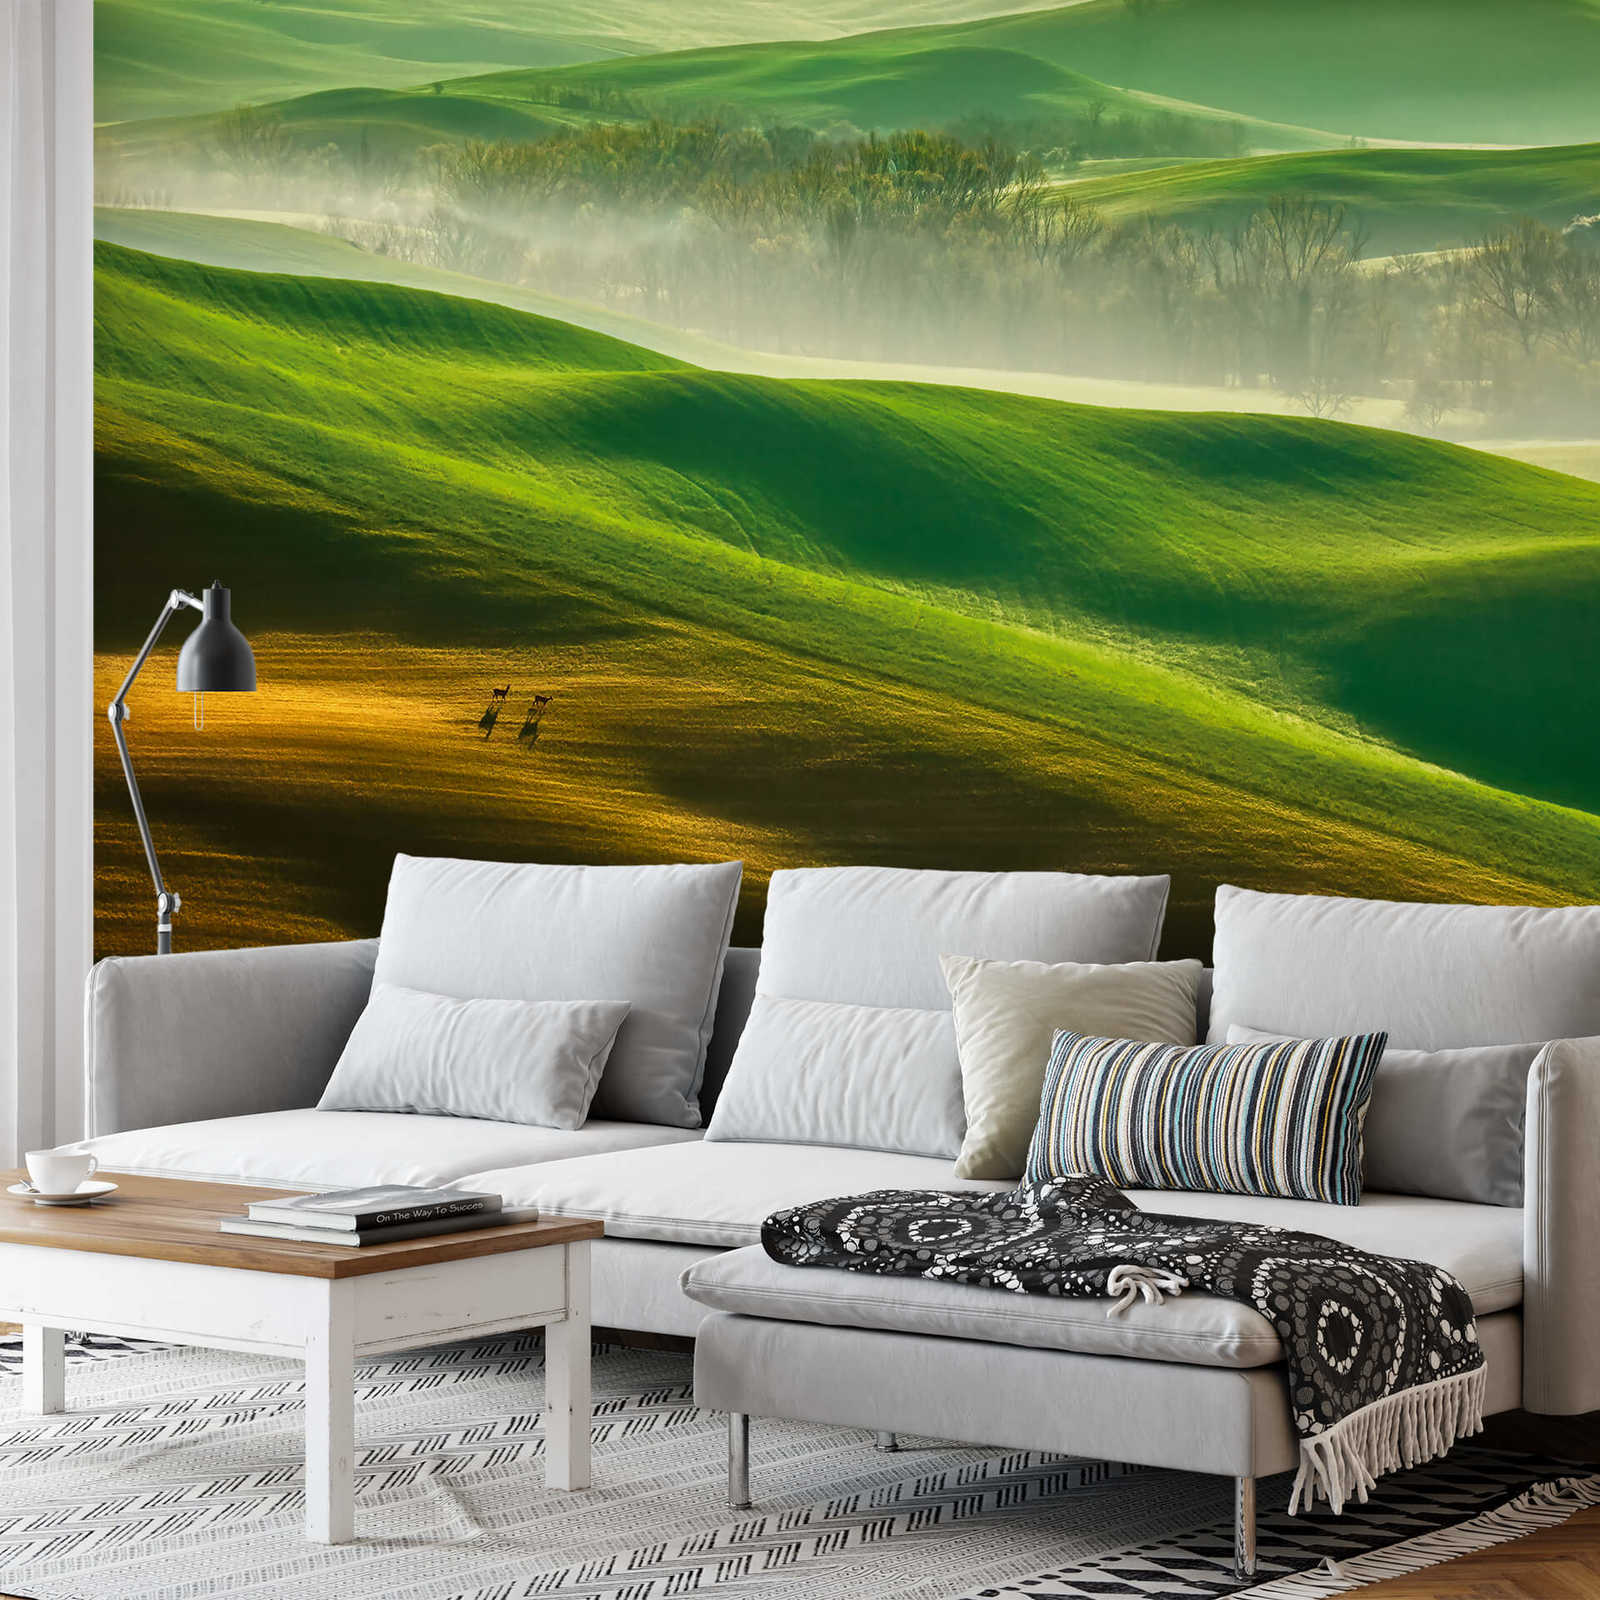             Papier peint panoramique Nature Paysage de montagne - Vert, jaune, blanc
        